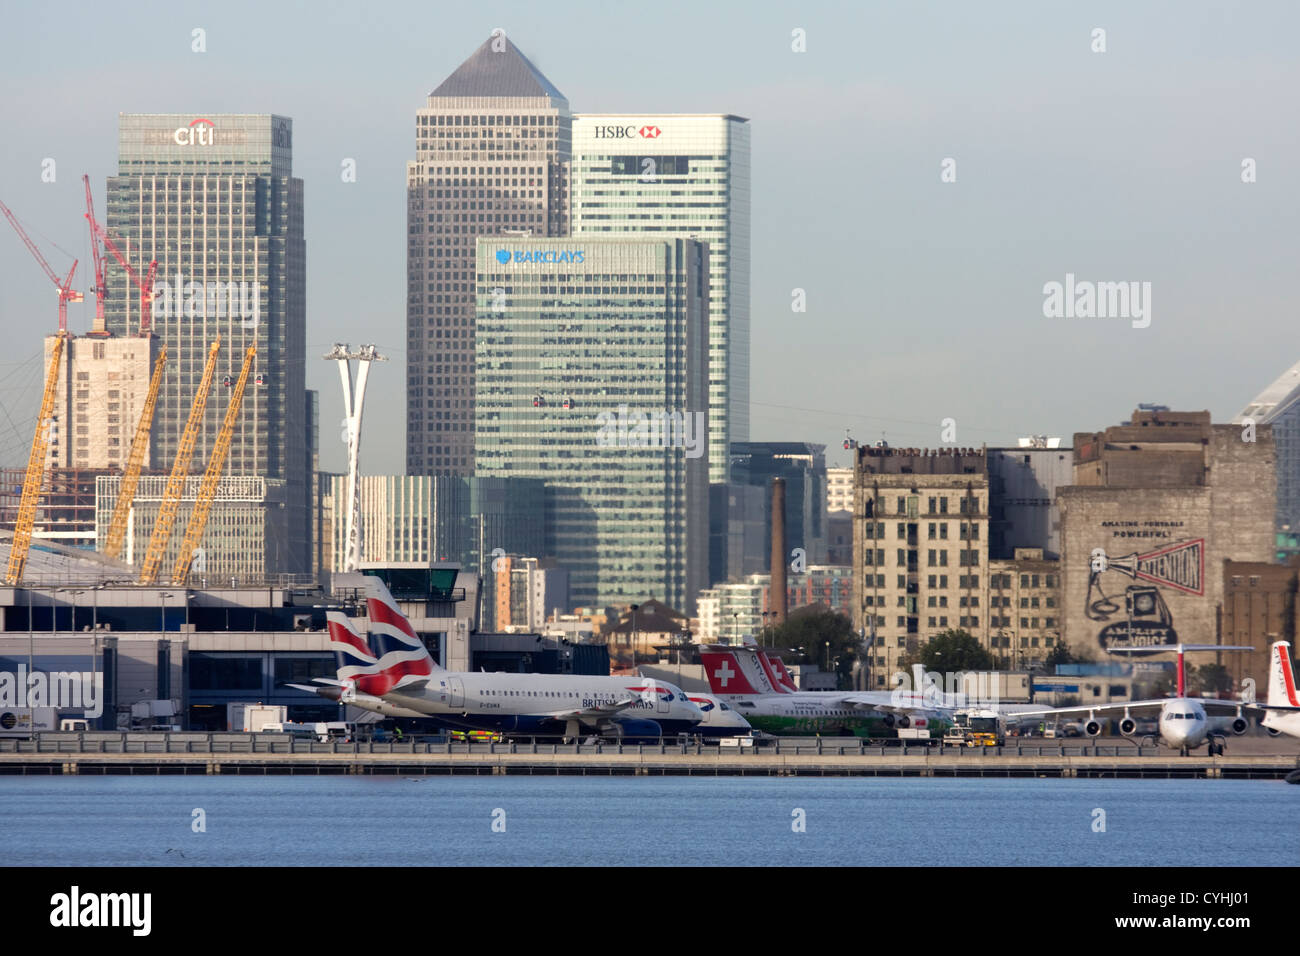 Avions régionaux à l'aéroport de London City. Canary Wharf et O2 dans l'arrière-plan, England, UK Banque D'Images